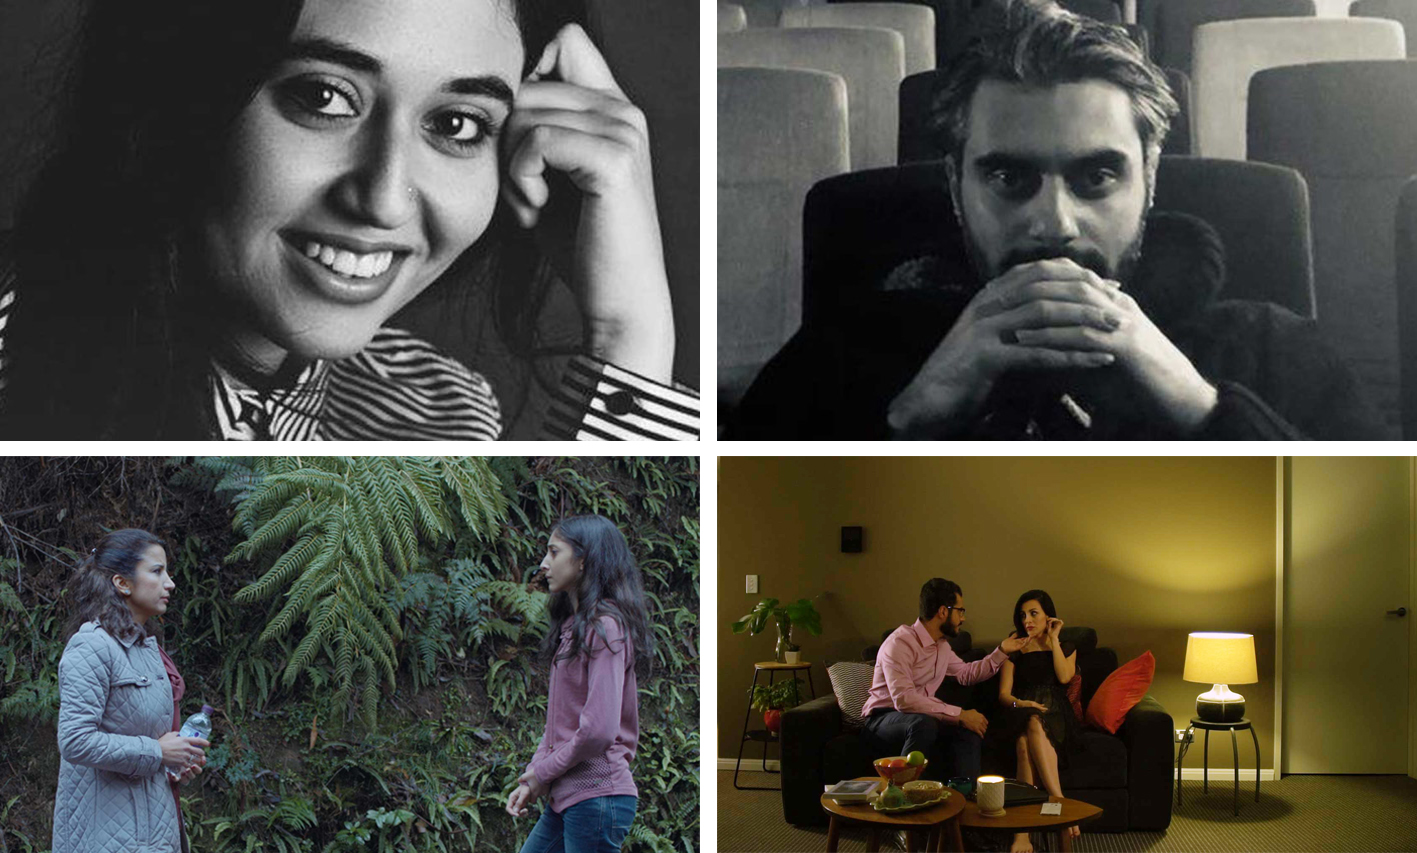 حضور دو فیلمساز ایرانی ساکن استرالیا در بخش مسابقه فیلم کوتاه جشنواره فیلم پارسی استرالیا